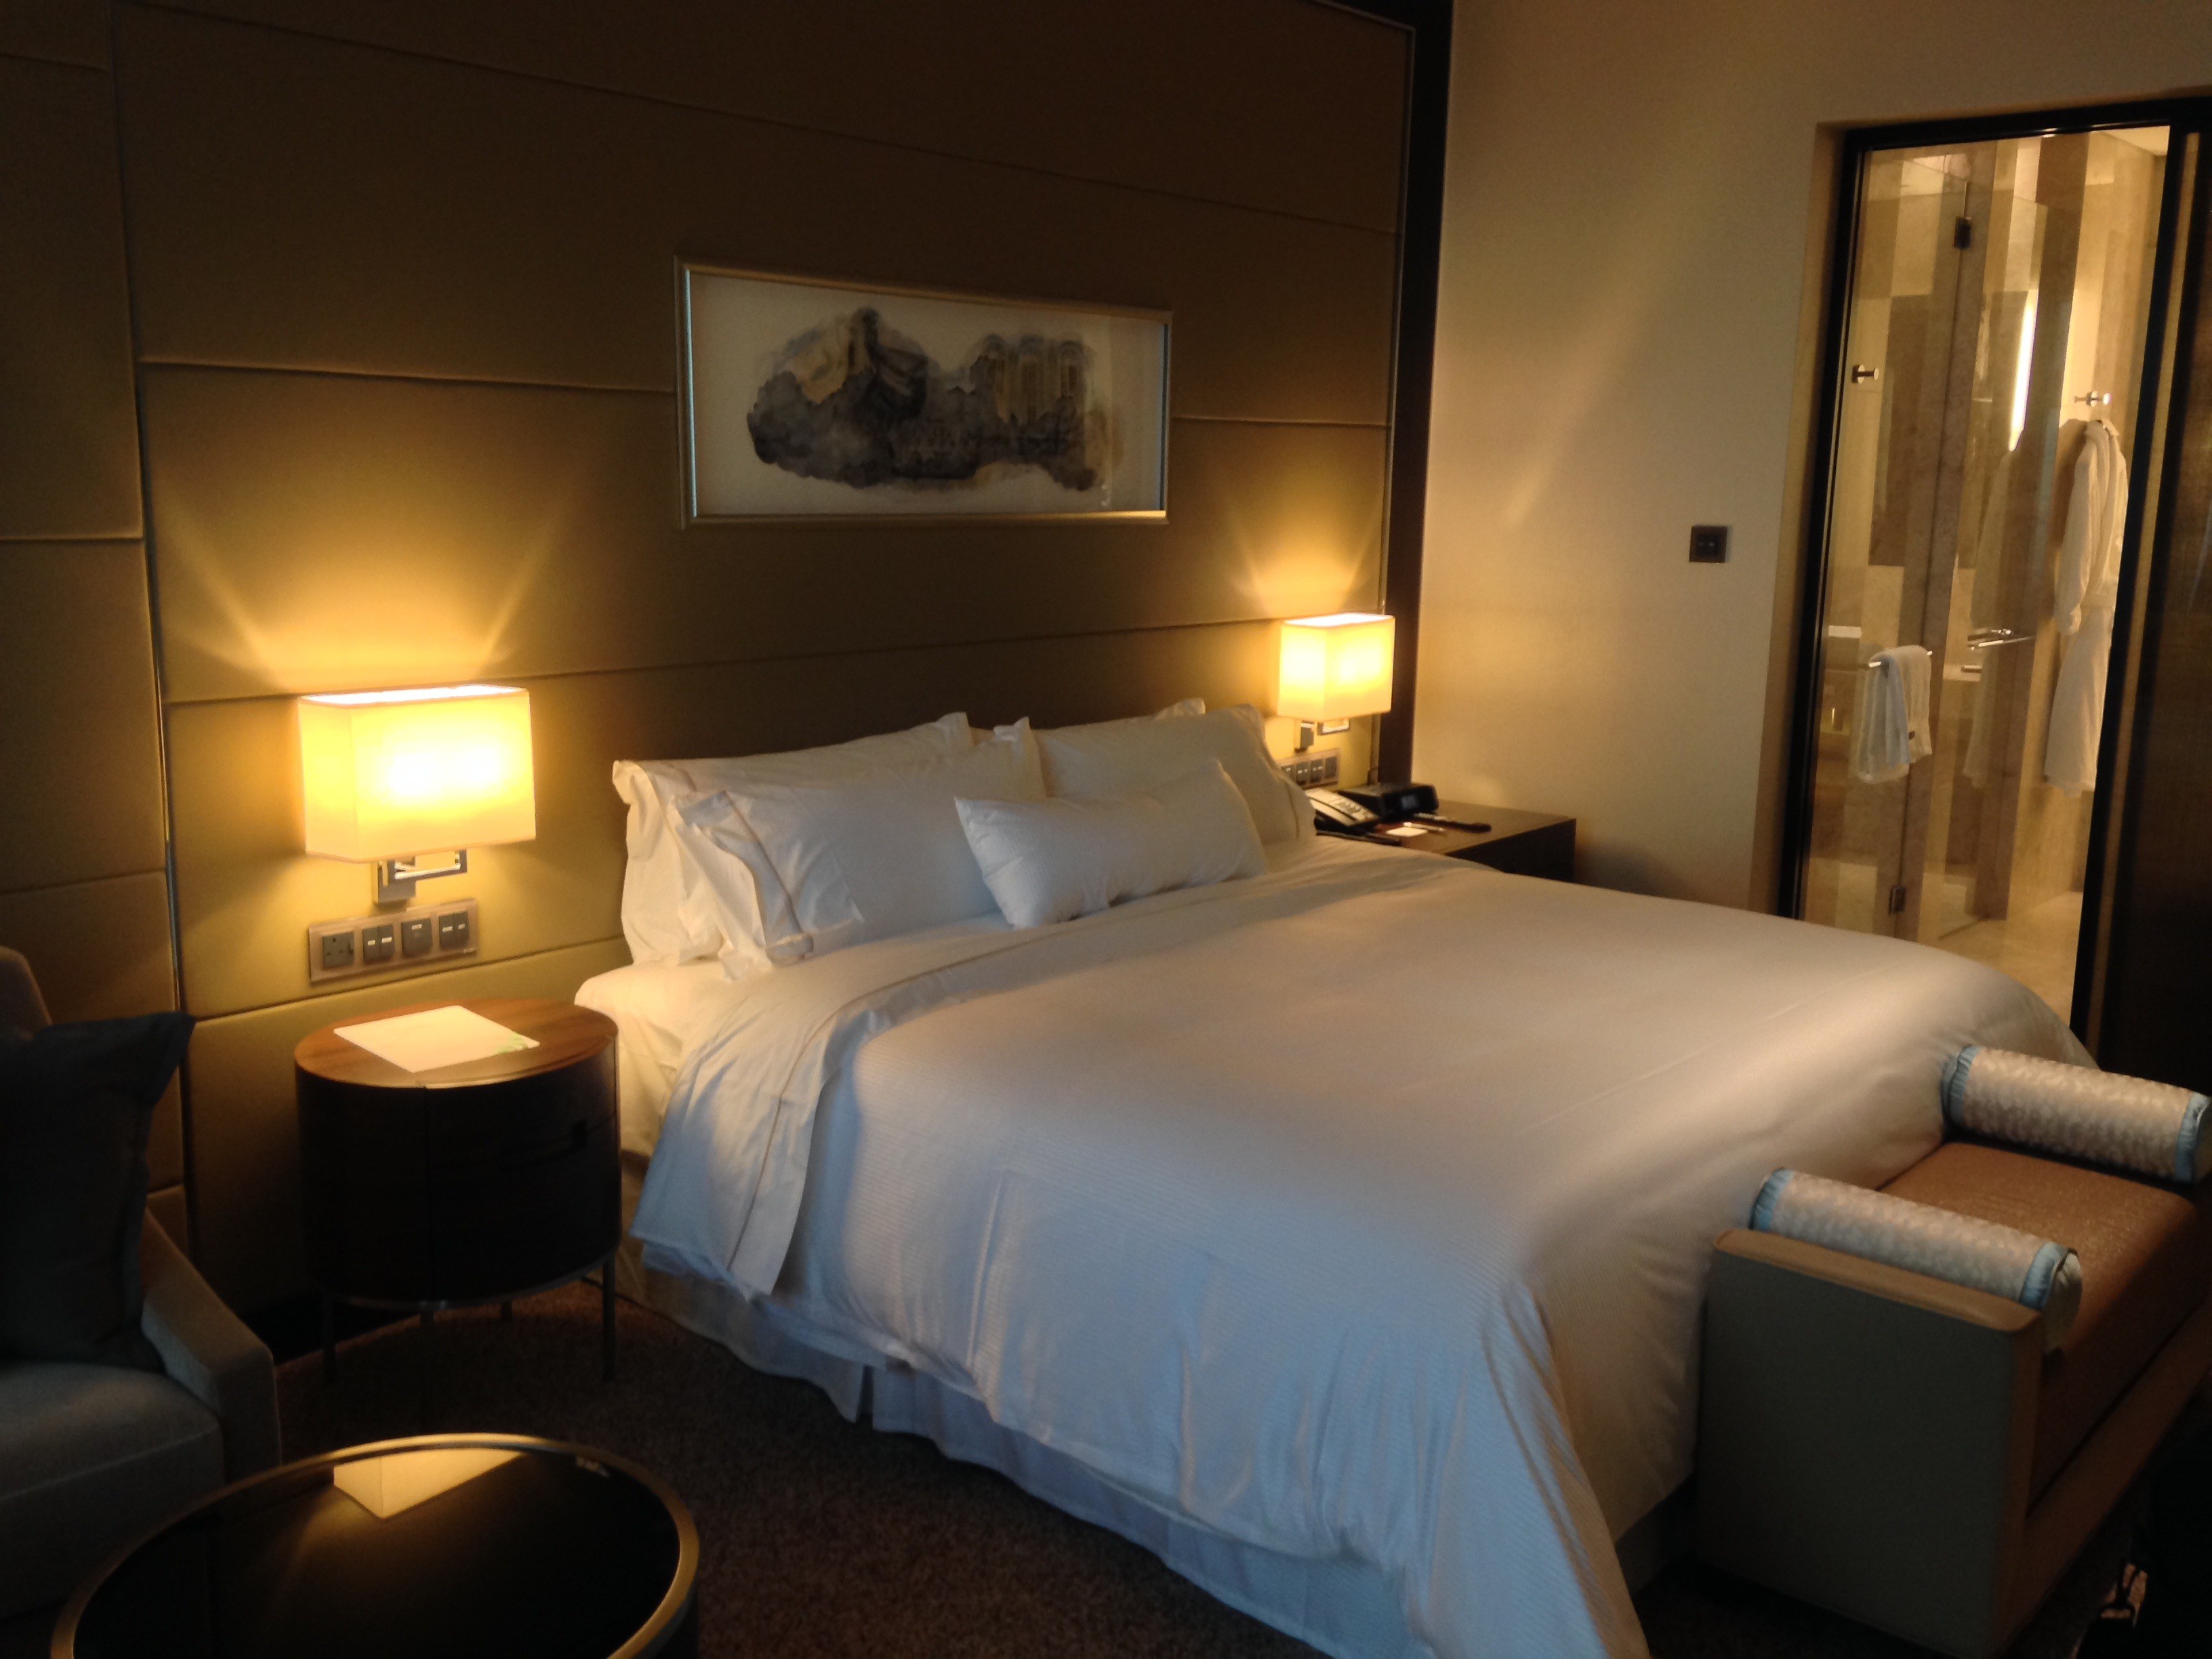 Scene image. Комната с кроватью. Кровать в отеле. Кровати для гостиниц. Спальня в отеле.